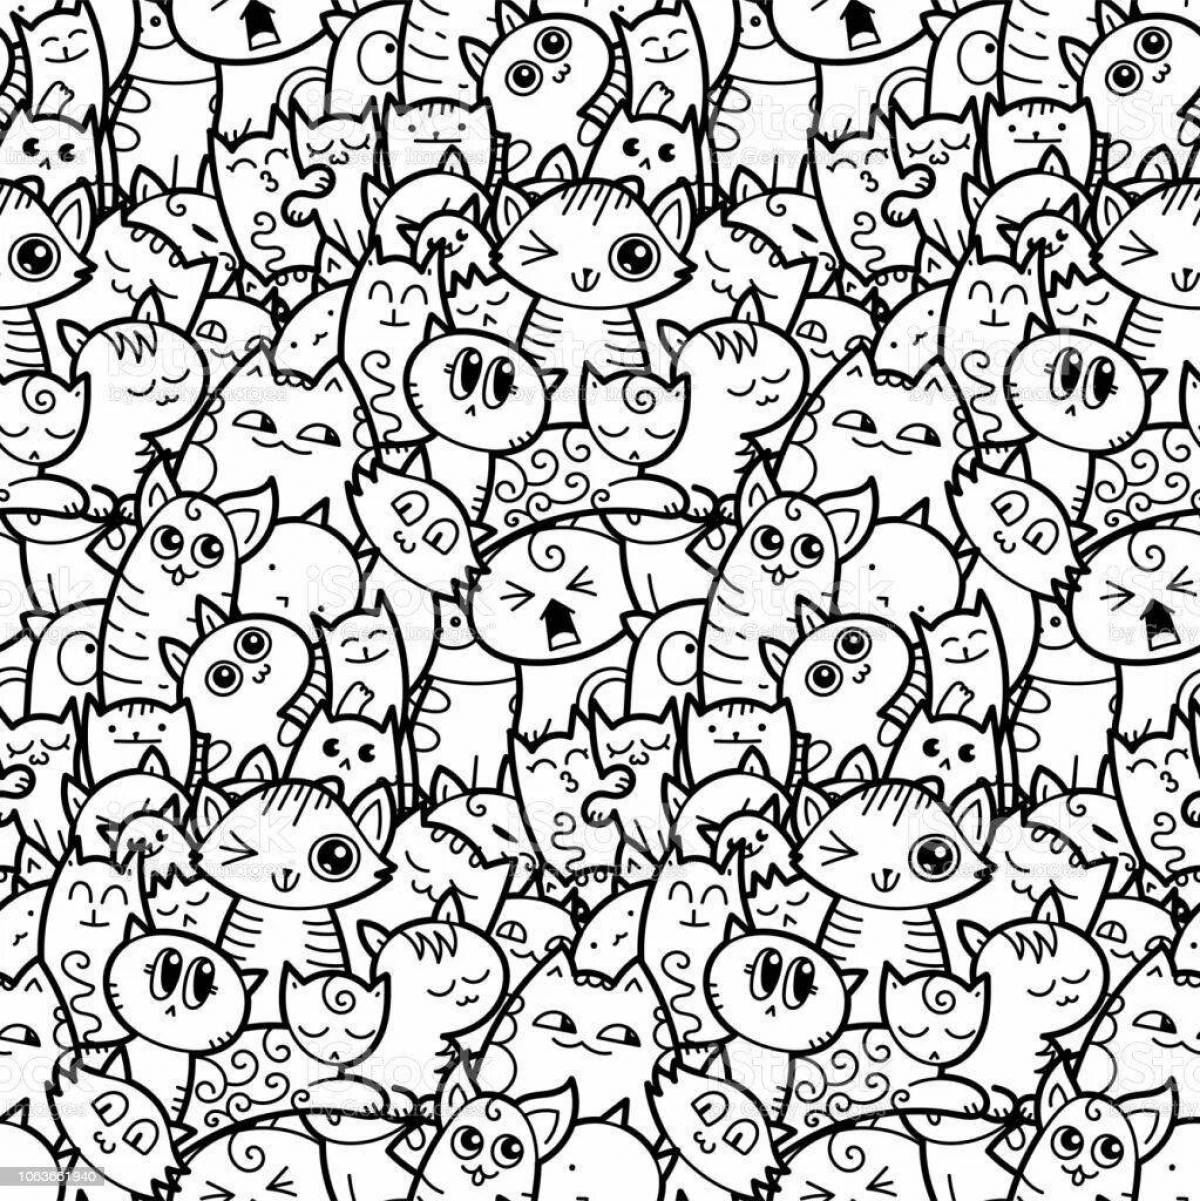 Раскраска экзотические маленькие кошки